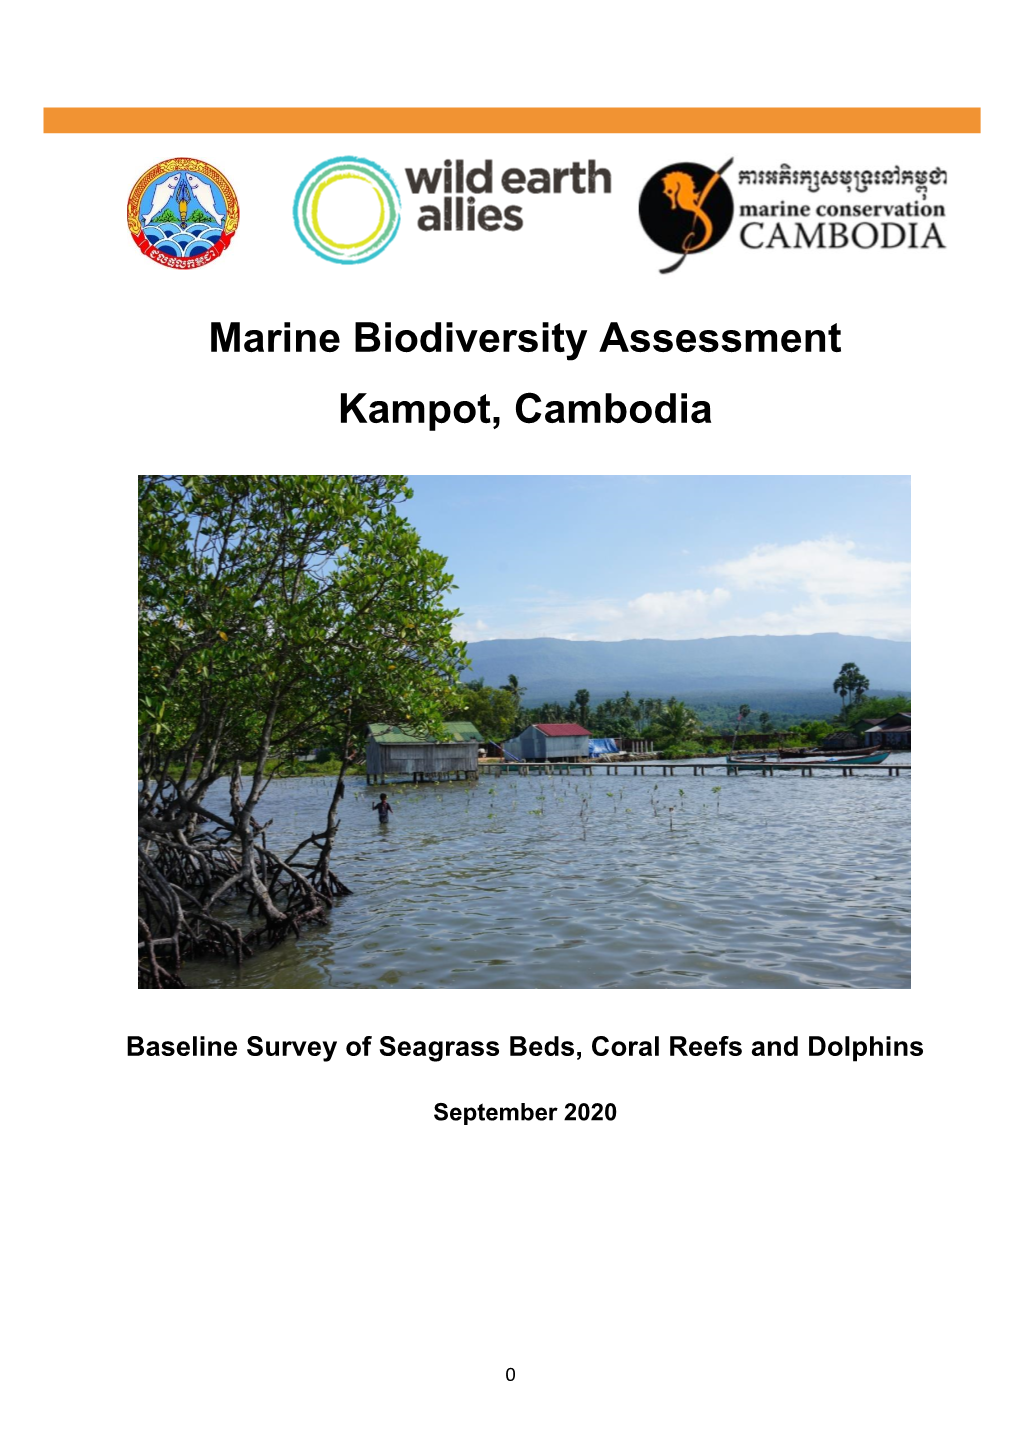 Marine Biodiversity Assessment Kampot, Cambodia